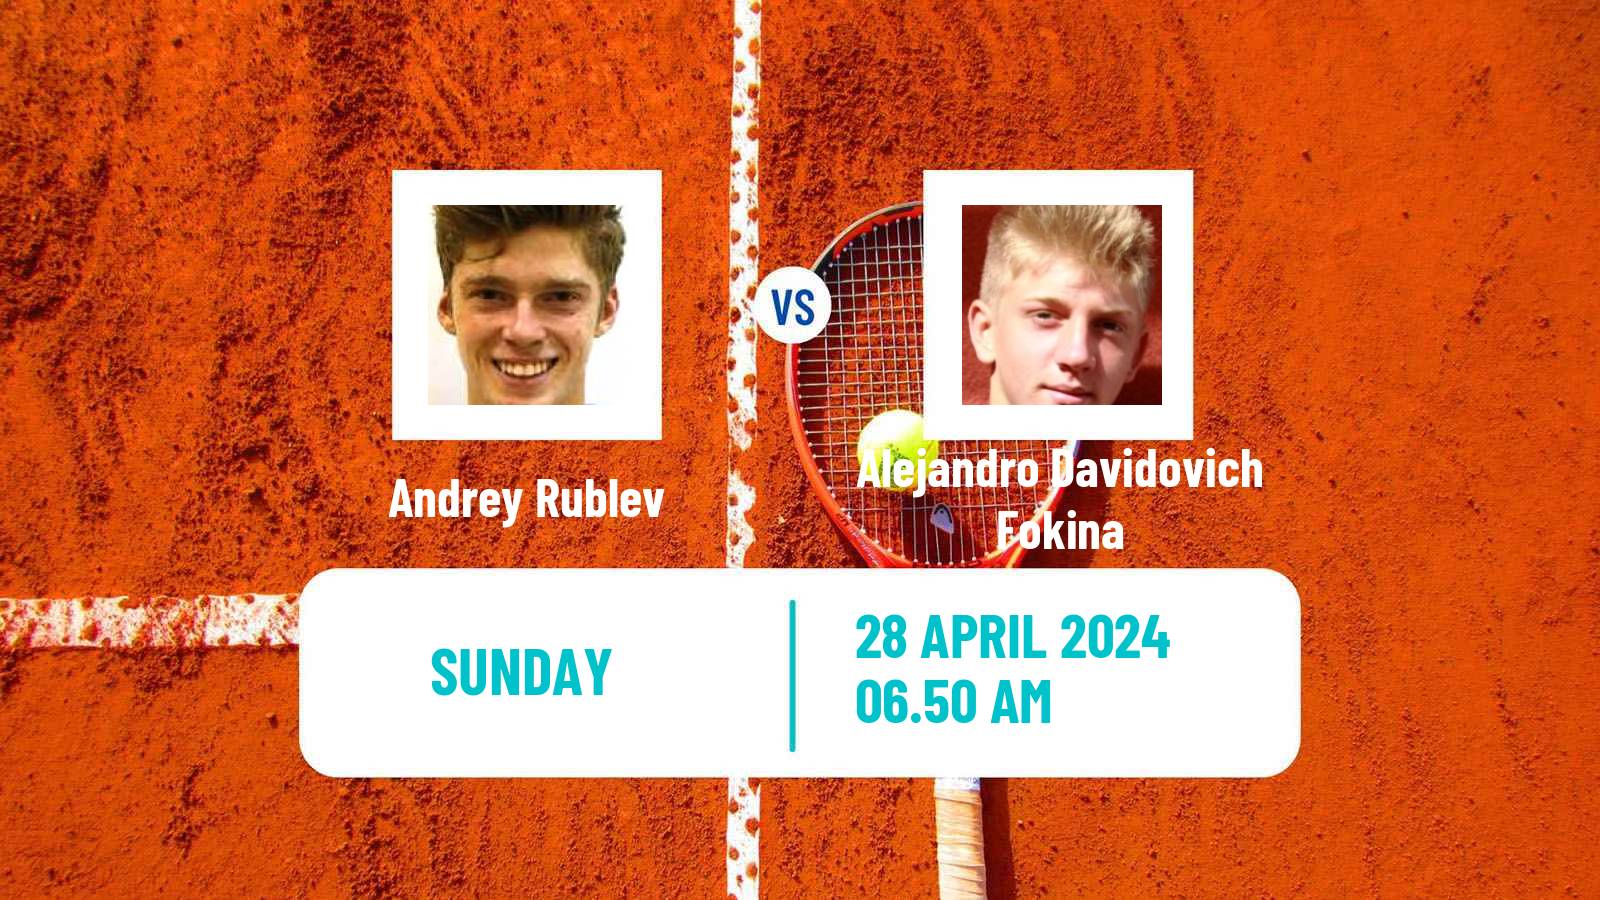 Tennis ATP Madrid Andrey Rublev - Alejandro Davidovich Fokina